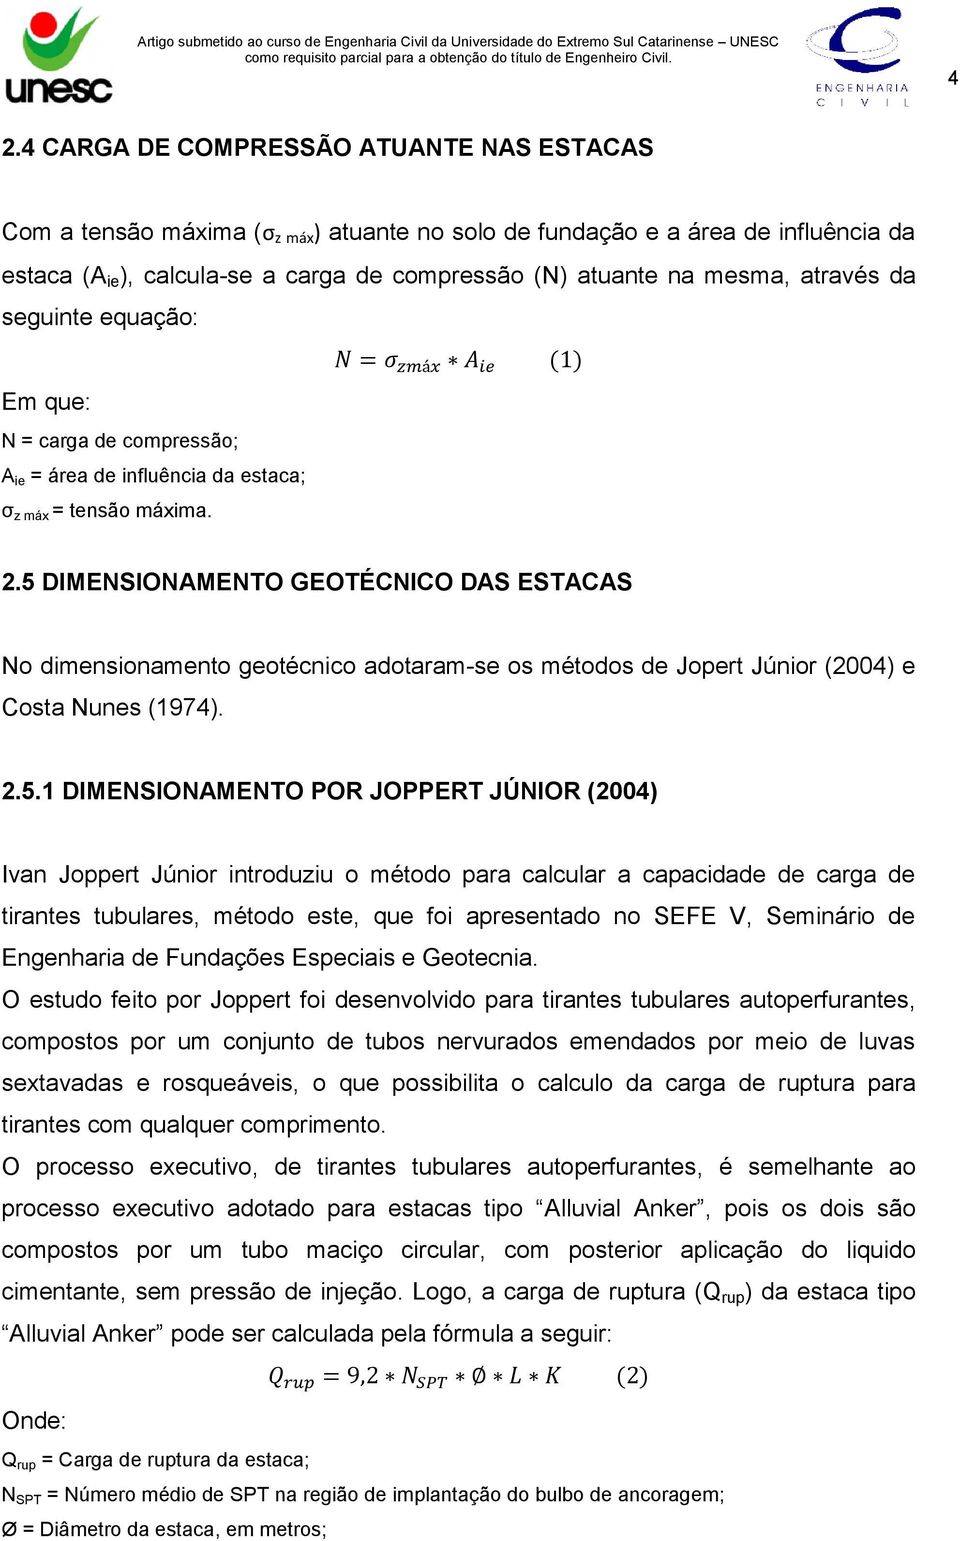 5 DIMENSIONAMENTO GEOTÉCNICO DAS ESTACAS No dimensionamento geotécnico adotaram-se os métodos de Jopert Júnior (2004) e Costa Nunes (1974). 2.5.1 DIMENSIONAMENTO POR JOPPERT JÚNIOR (2004) Ivan